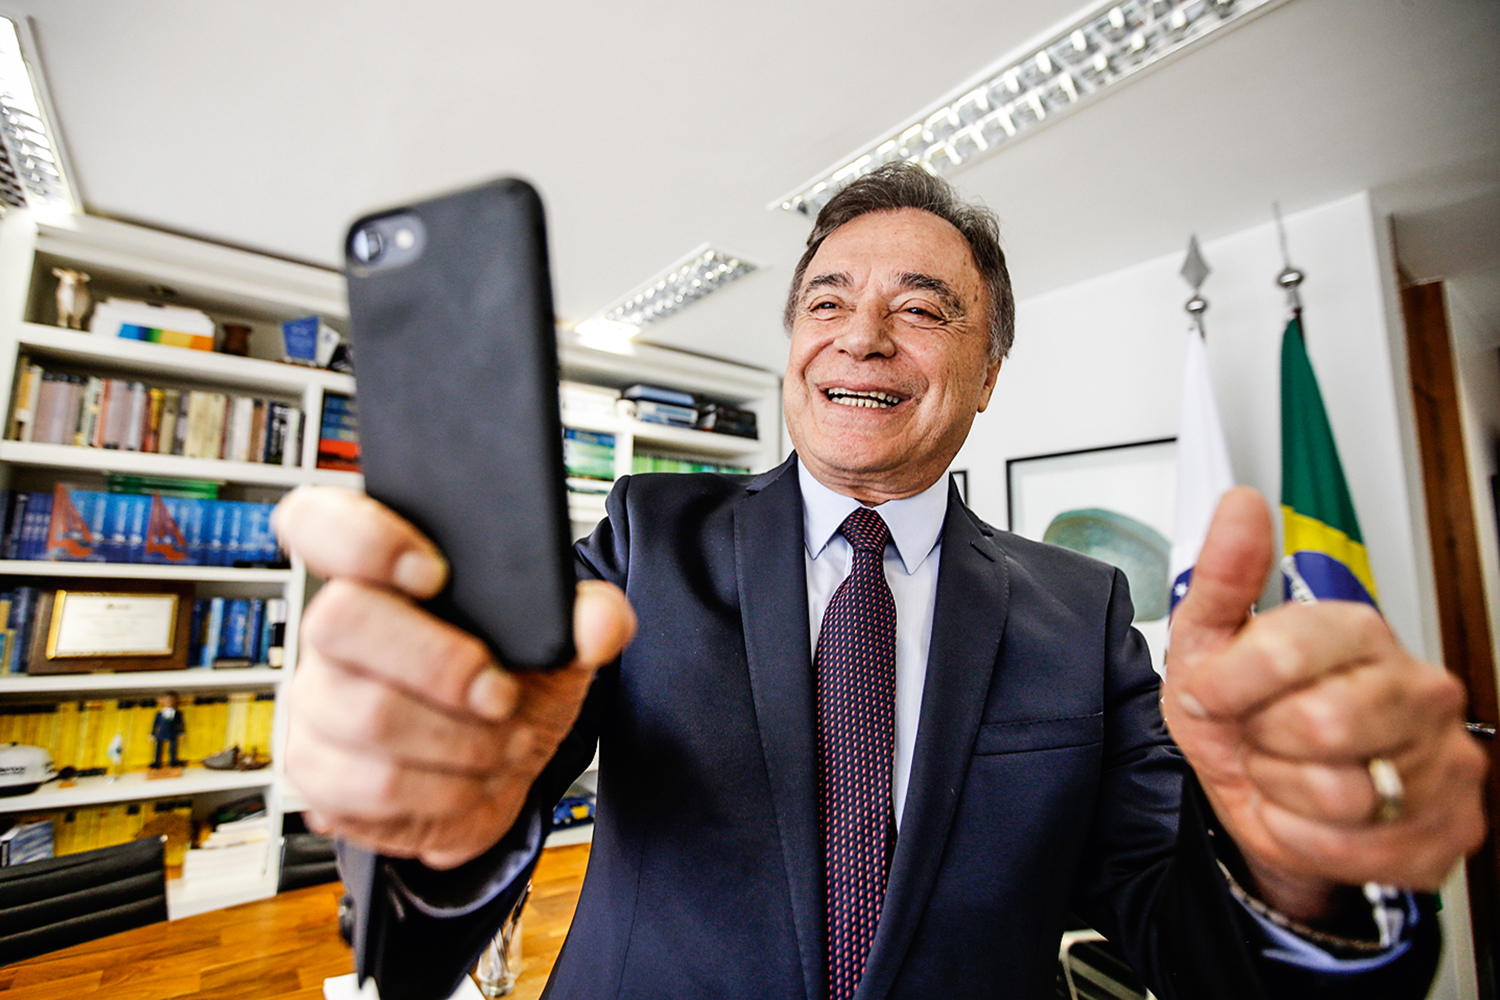 EMPOLGADO - Alvaro Dias: o senador do Podemos conversa para atrair o ex-juiz -